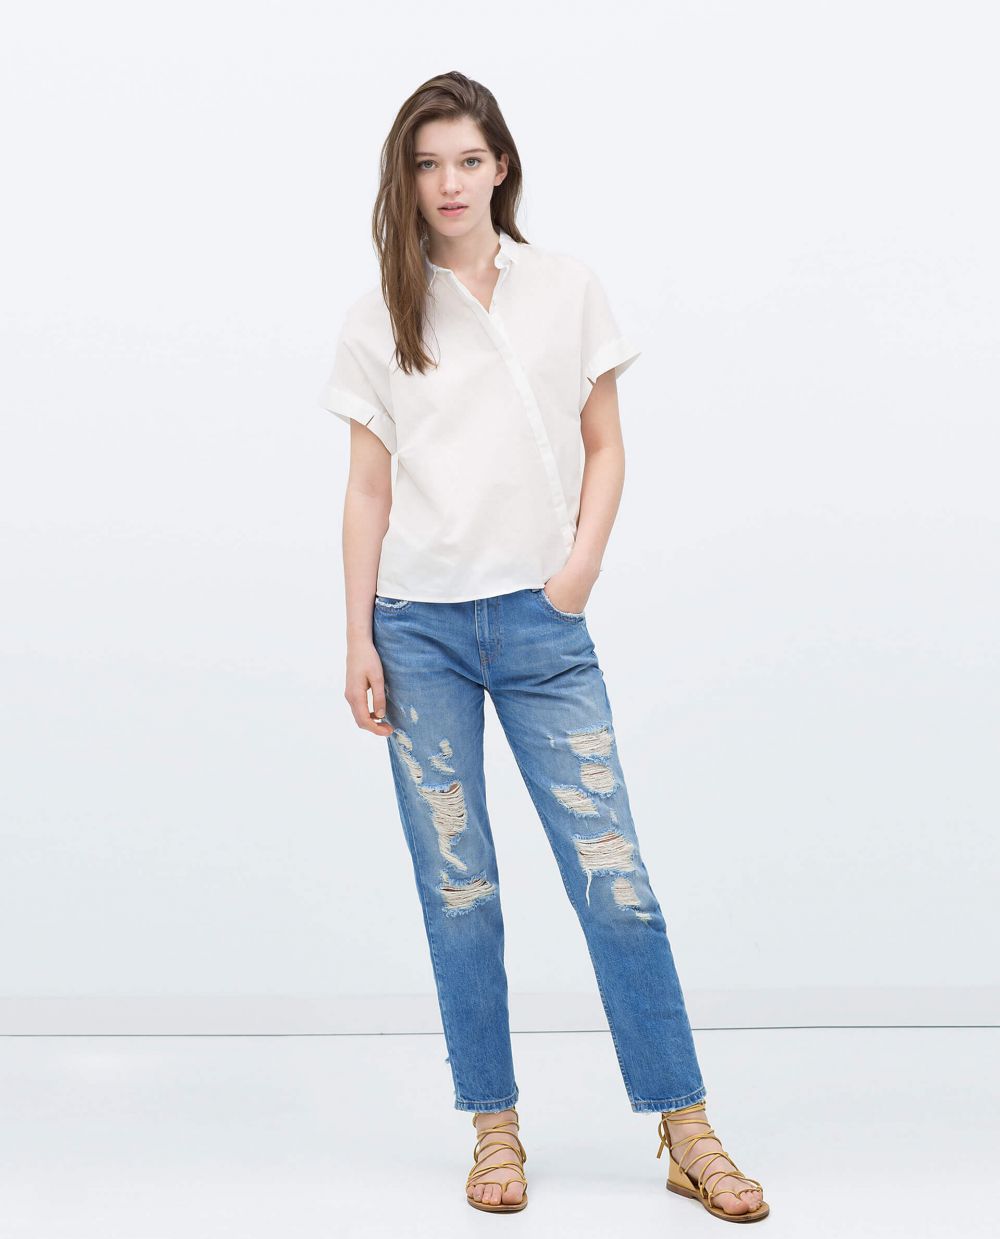 Beda karakter beda gaya, 10 model celana jeans ini kamu banget nggak?